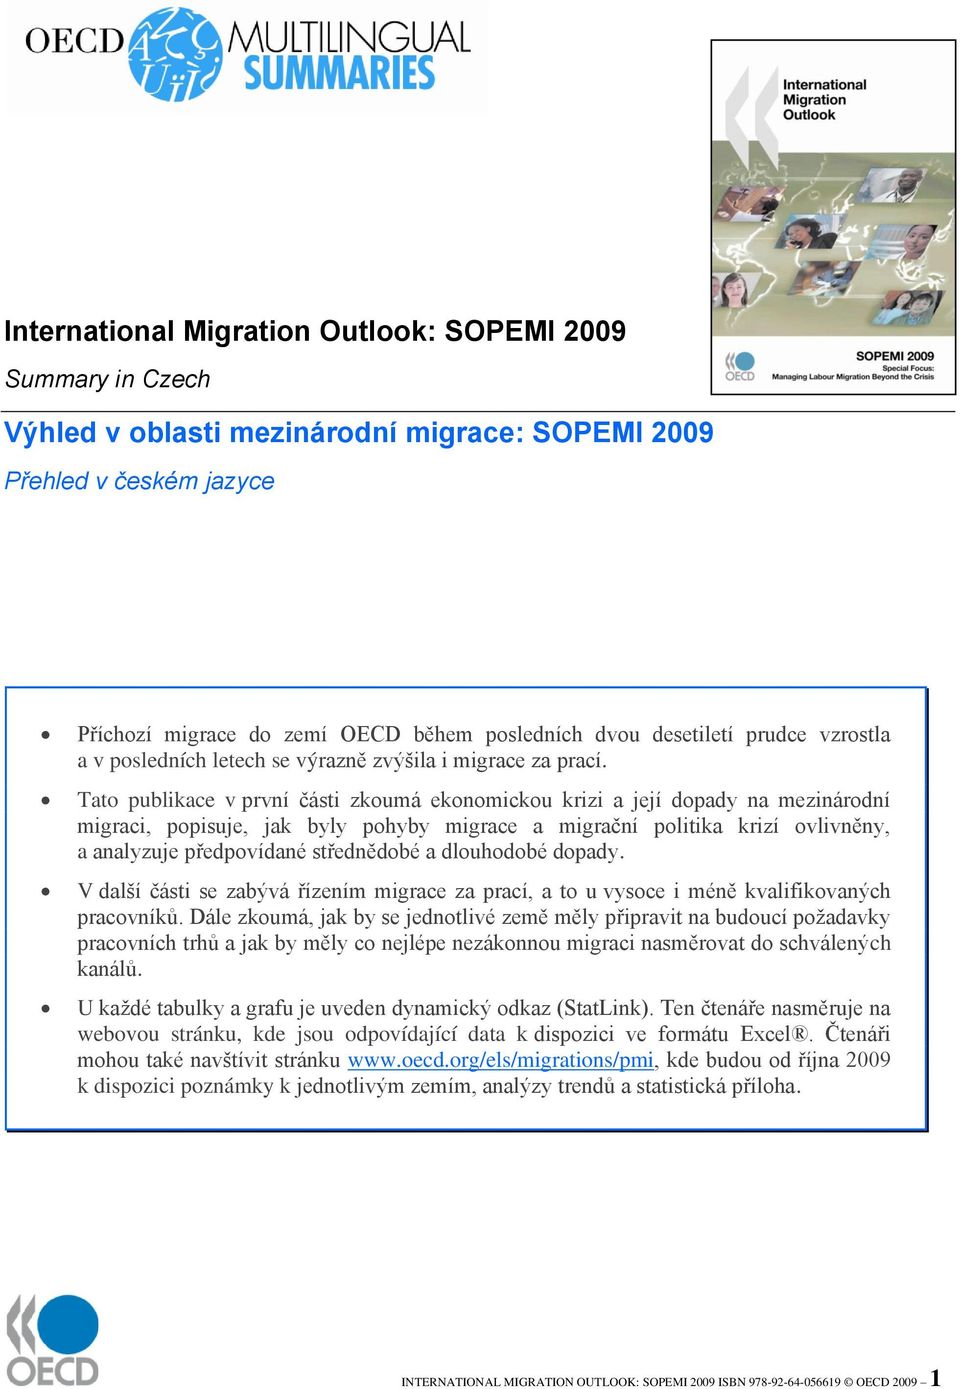 Tato publikace v první části zkoumá ekonomickou krizi a její dopady na mezinárodní migraci, popisuje, jak byly pohyby migrace a migrační politika krizí ovlivněny, a analyzuje předpovídané střednědobé